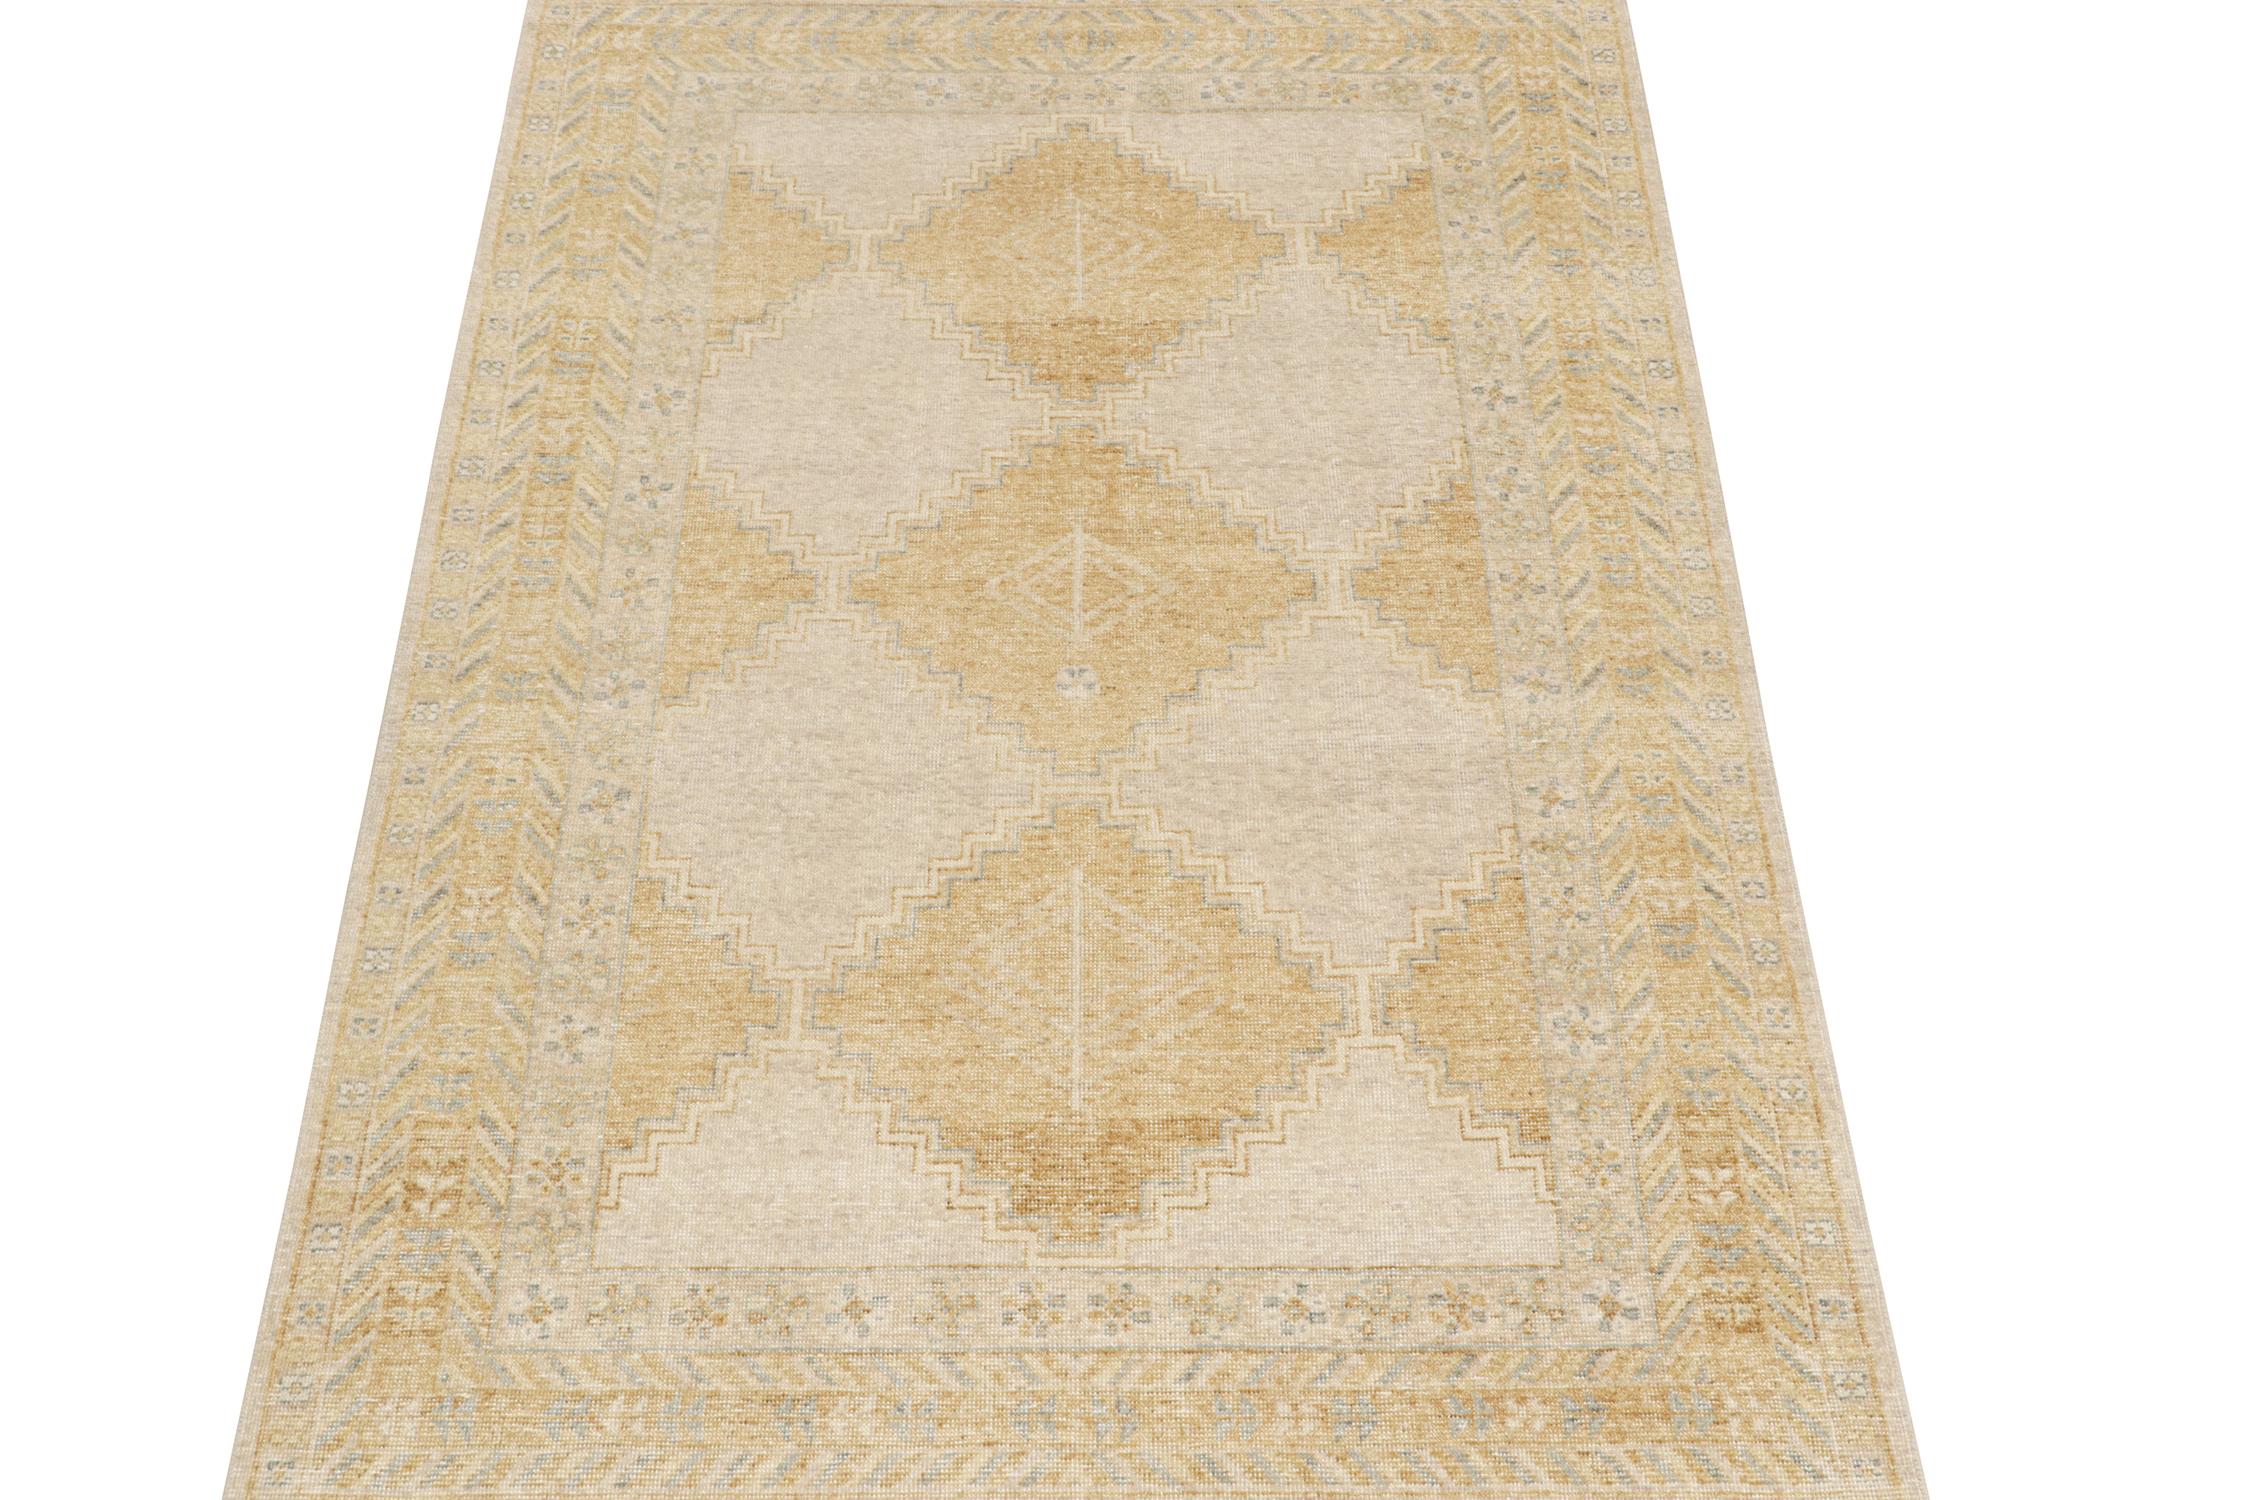 Ce tapis 6x9 est un nouvel ajout à la collection Homage de Rug & Kilim. Noué à la main en laine et en coton, il reprend le motif d'un ancien tapis tribal dans une nouvelle version de la texture vieillie.

Sur le Design :

On ne peut s'empêcher